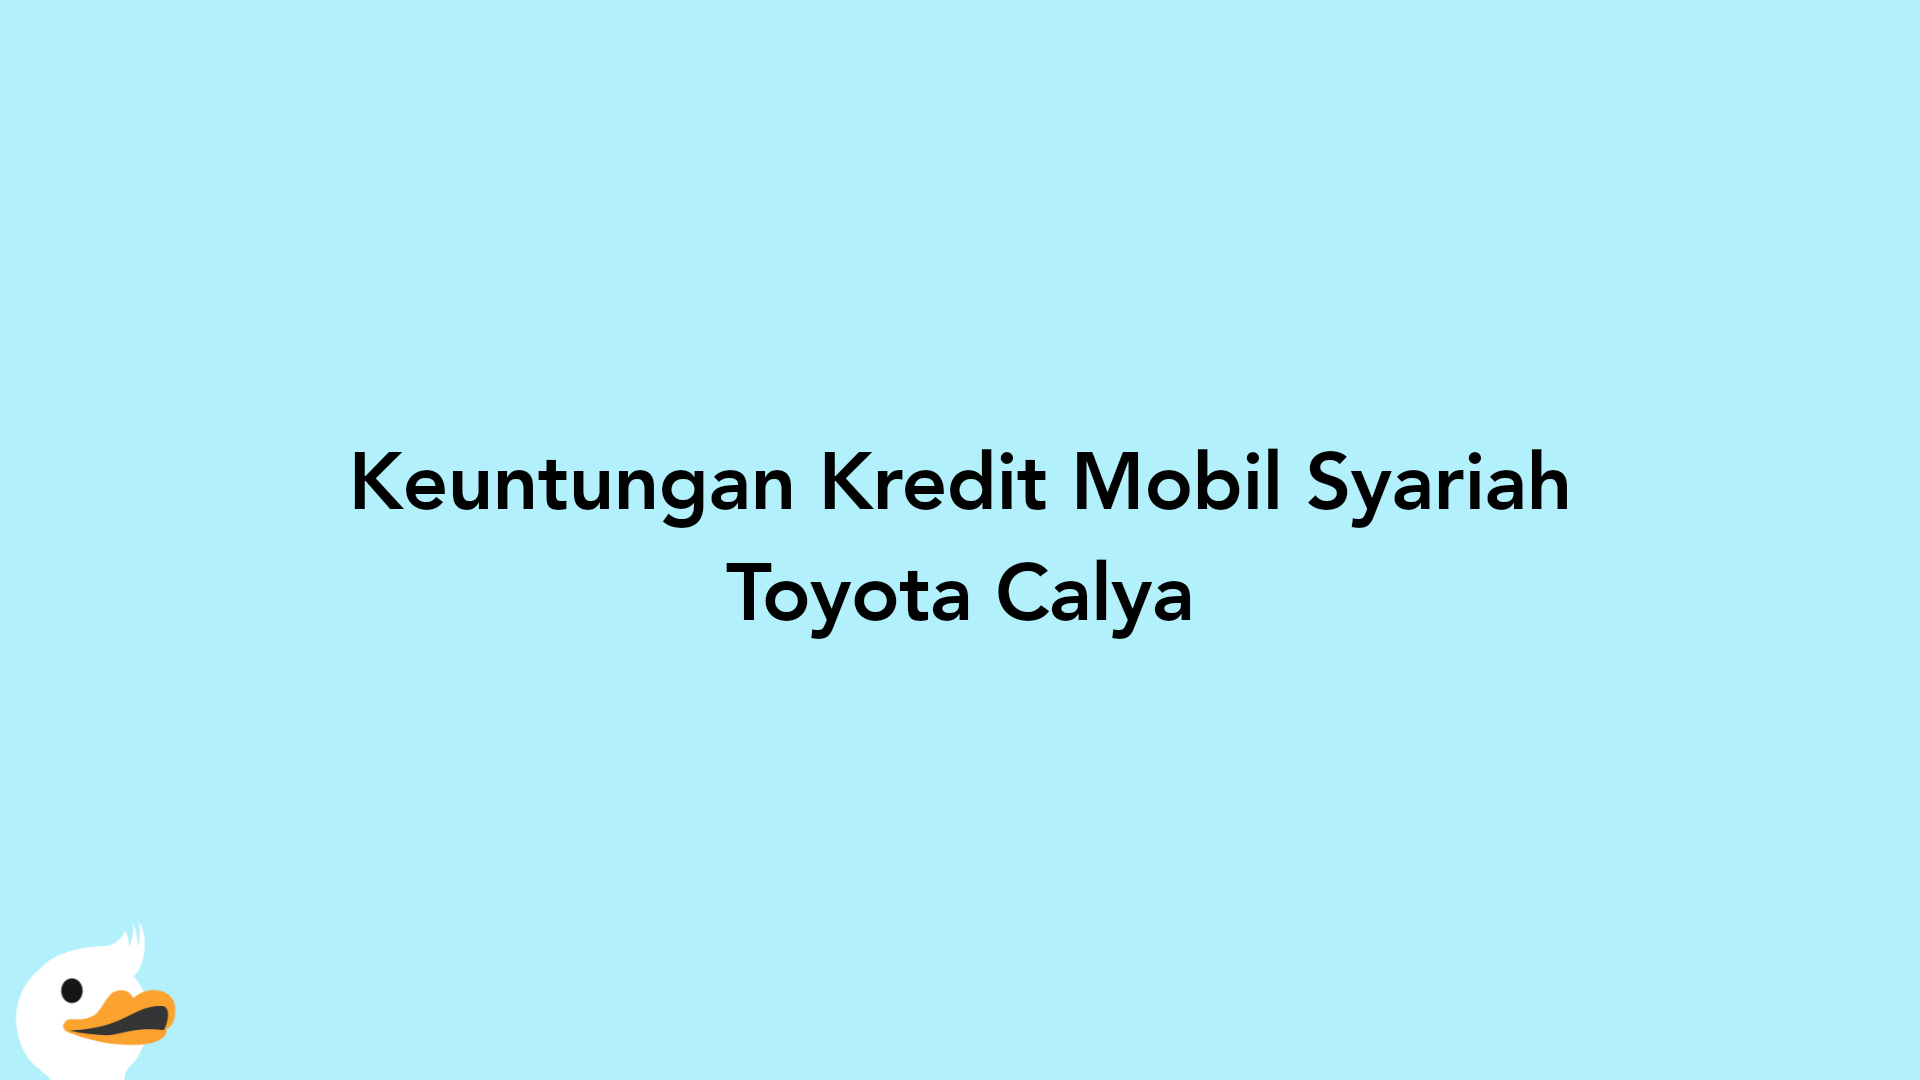 Keuntungan Kredit Mobil Syariah Toyota Calya